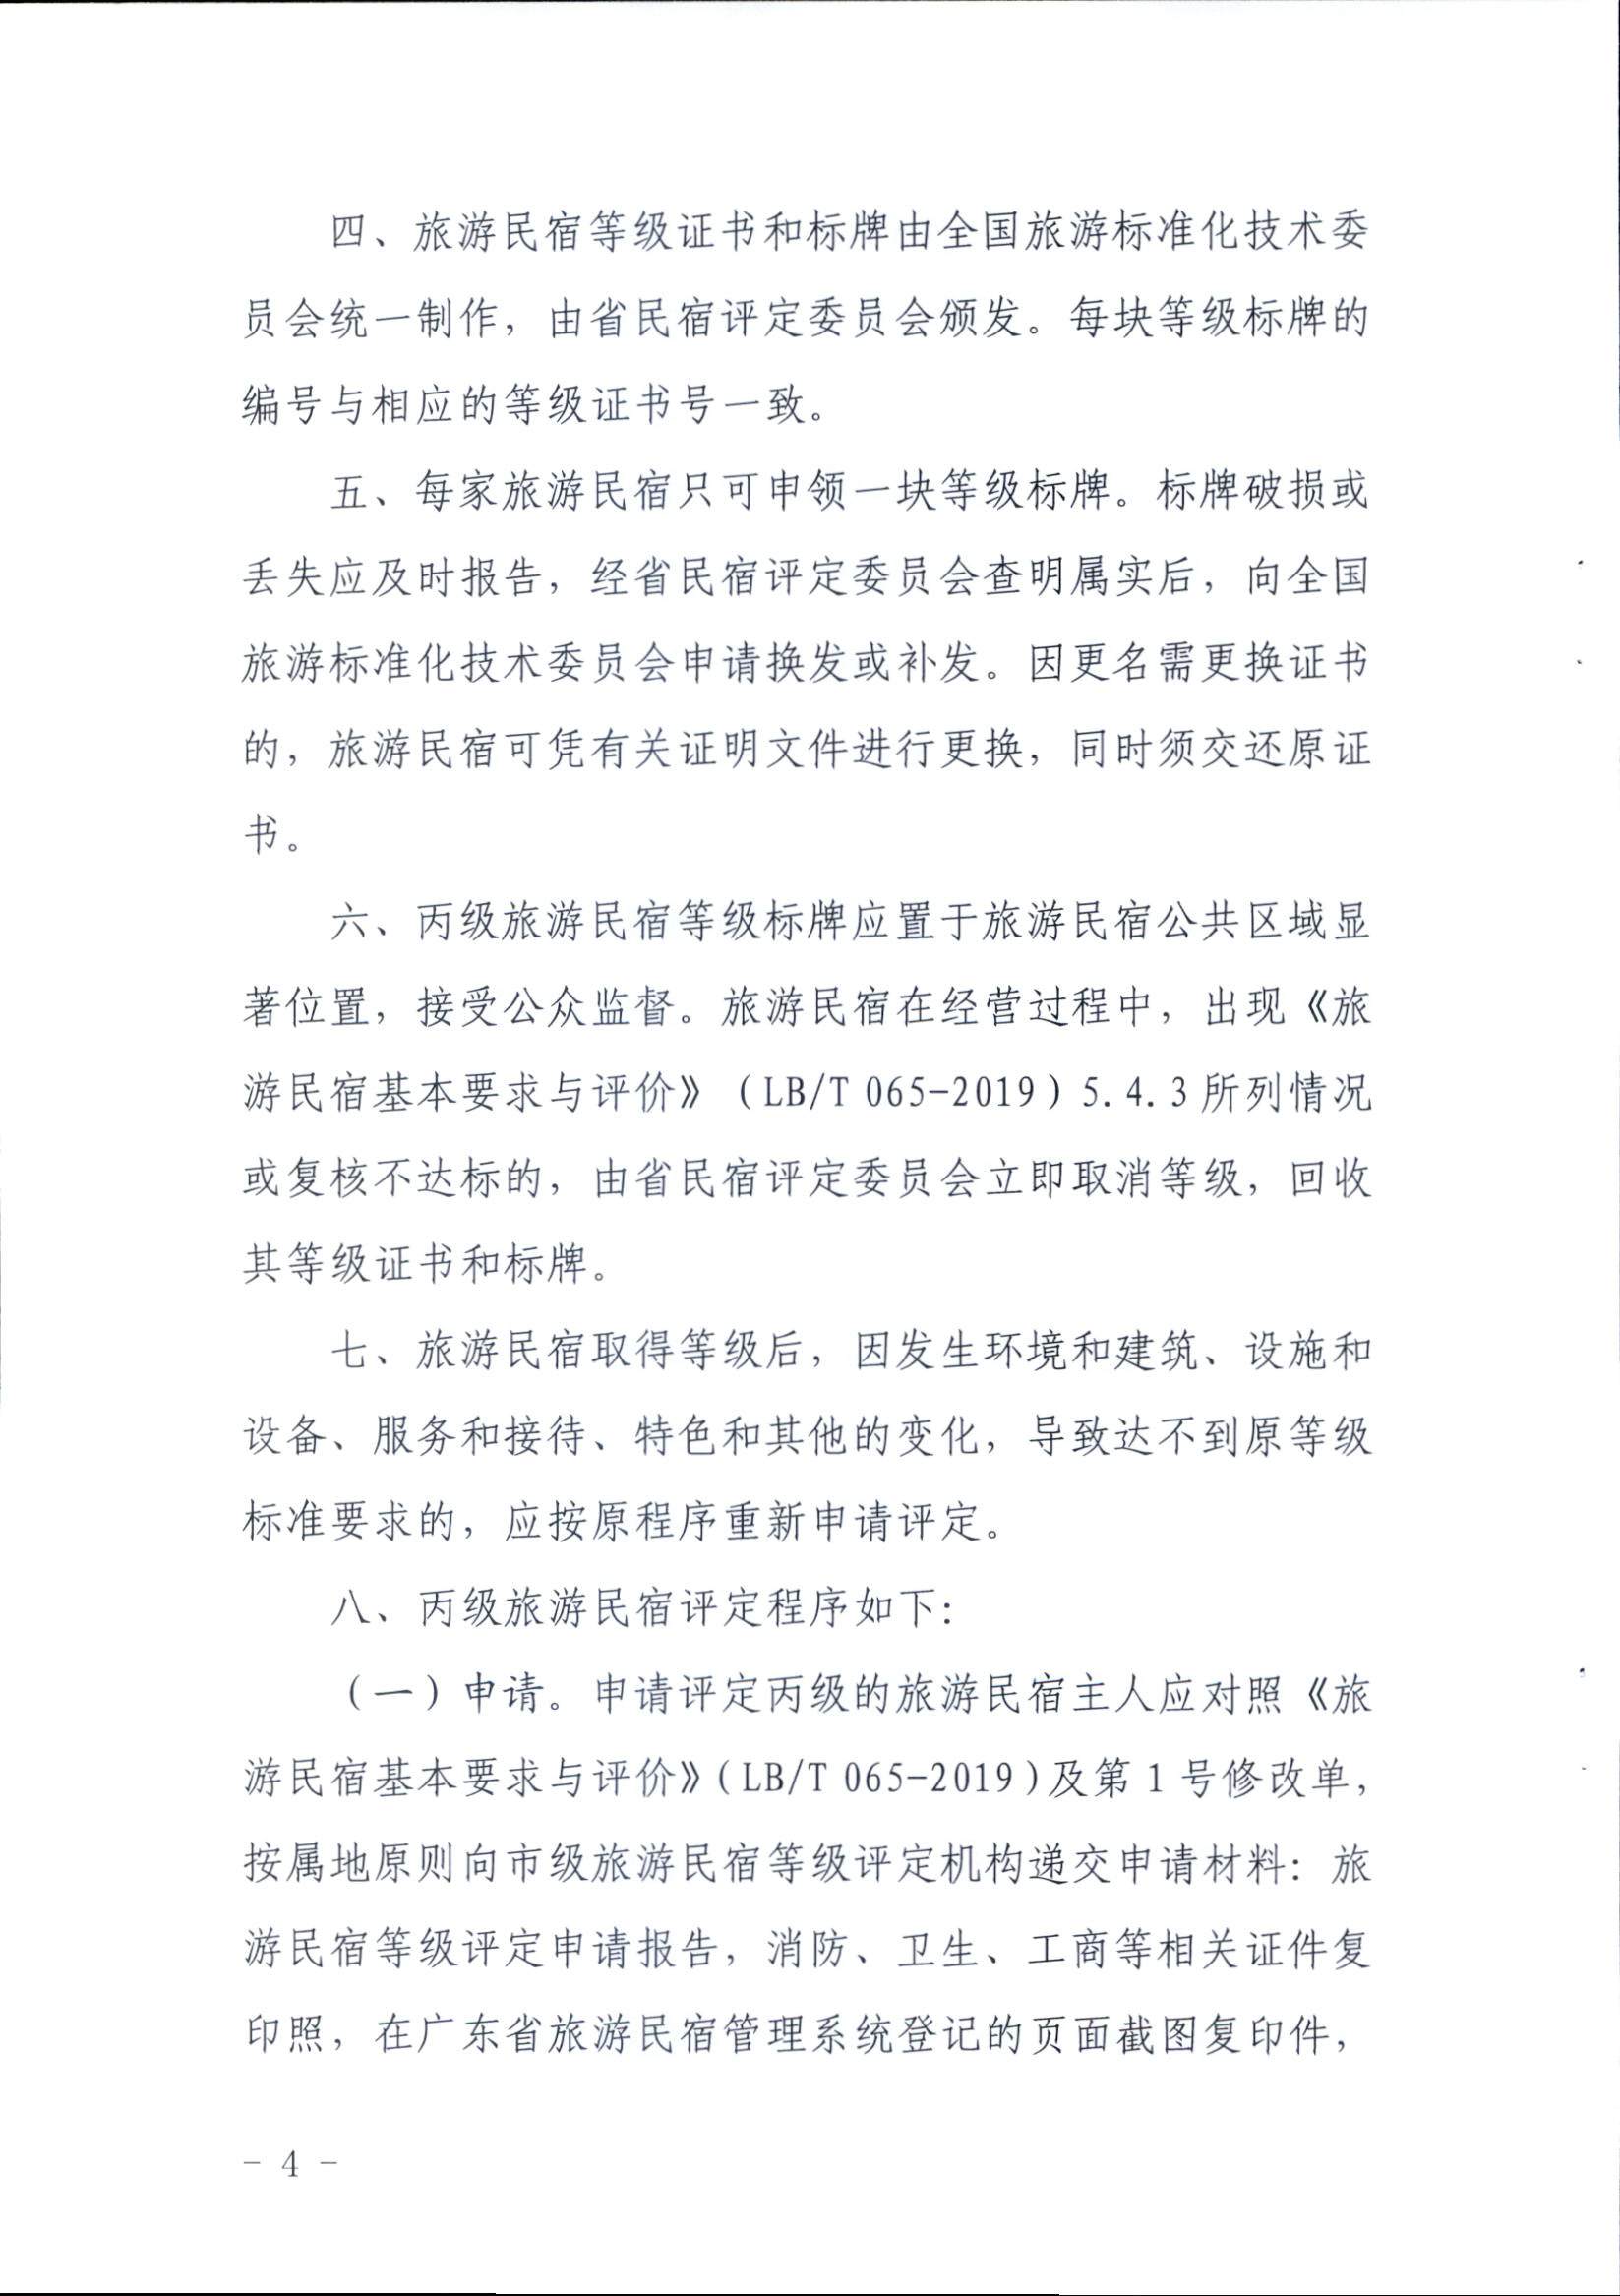 广东省旅游民宿等级评定和复核工作规程_页面_4.jpg